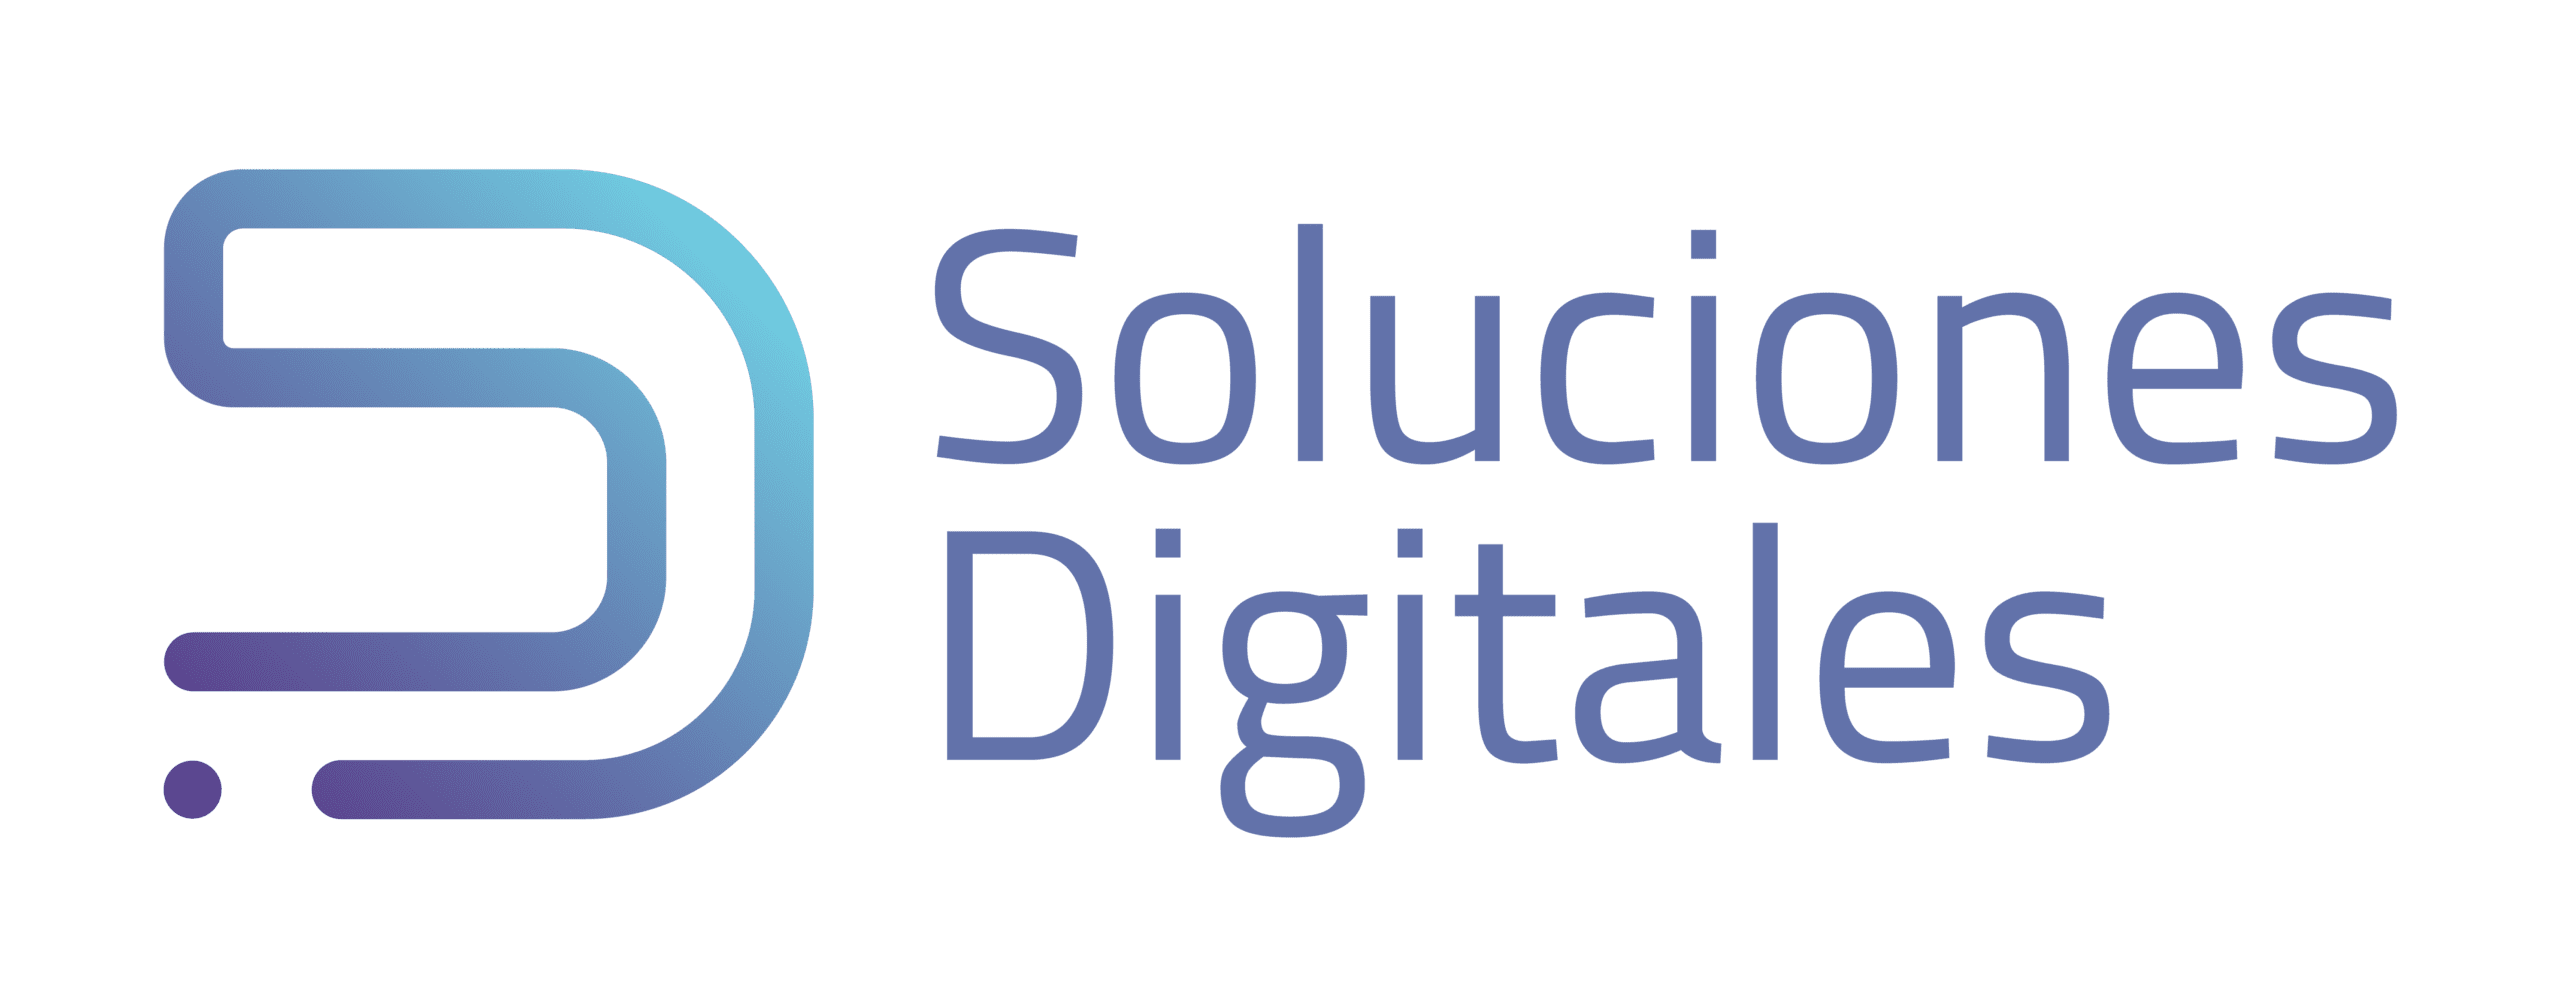 Soluciones Digitales